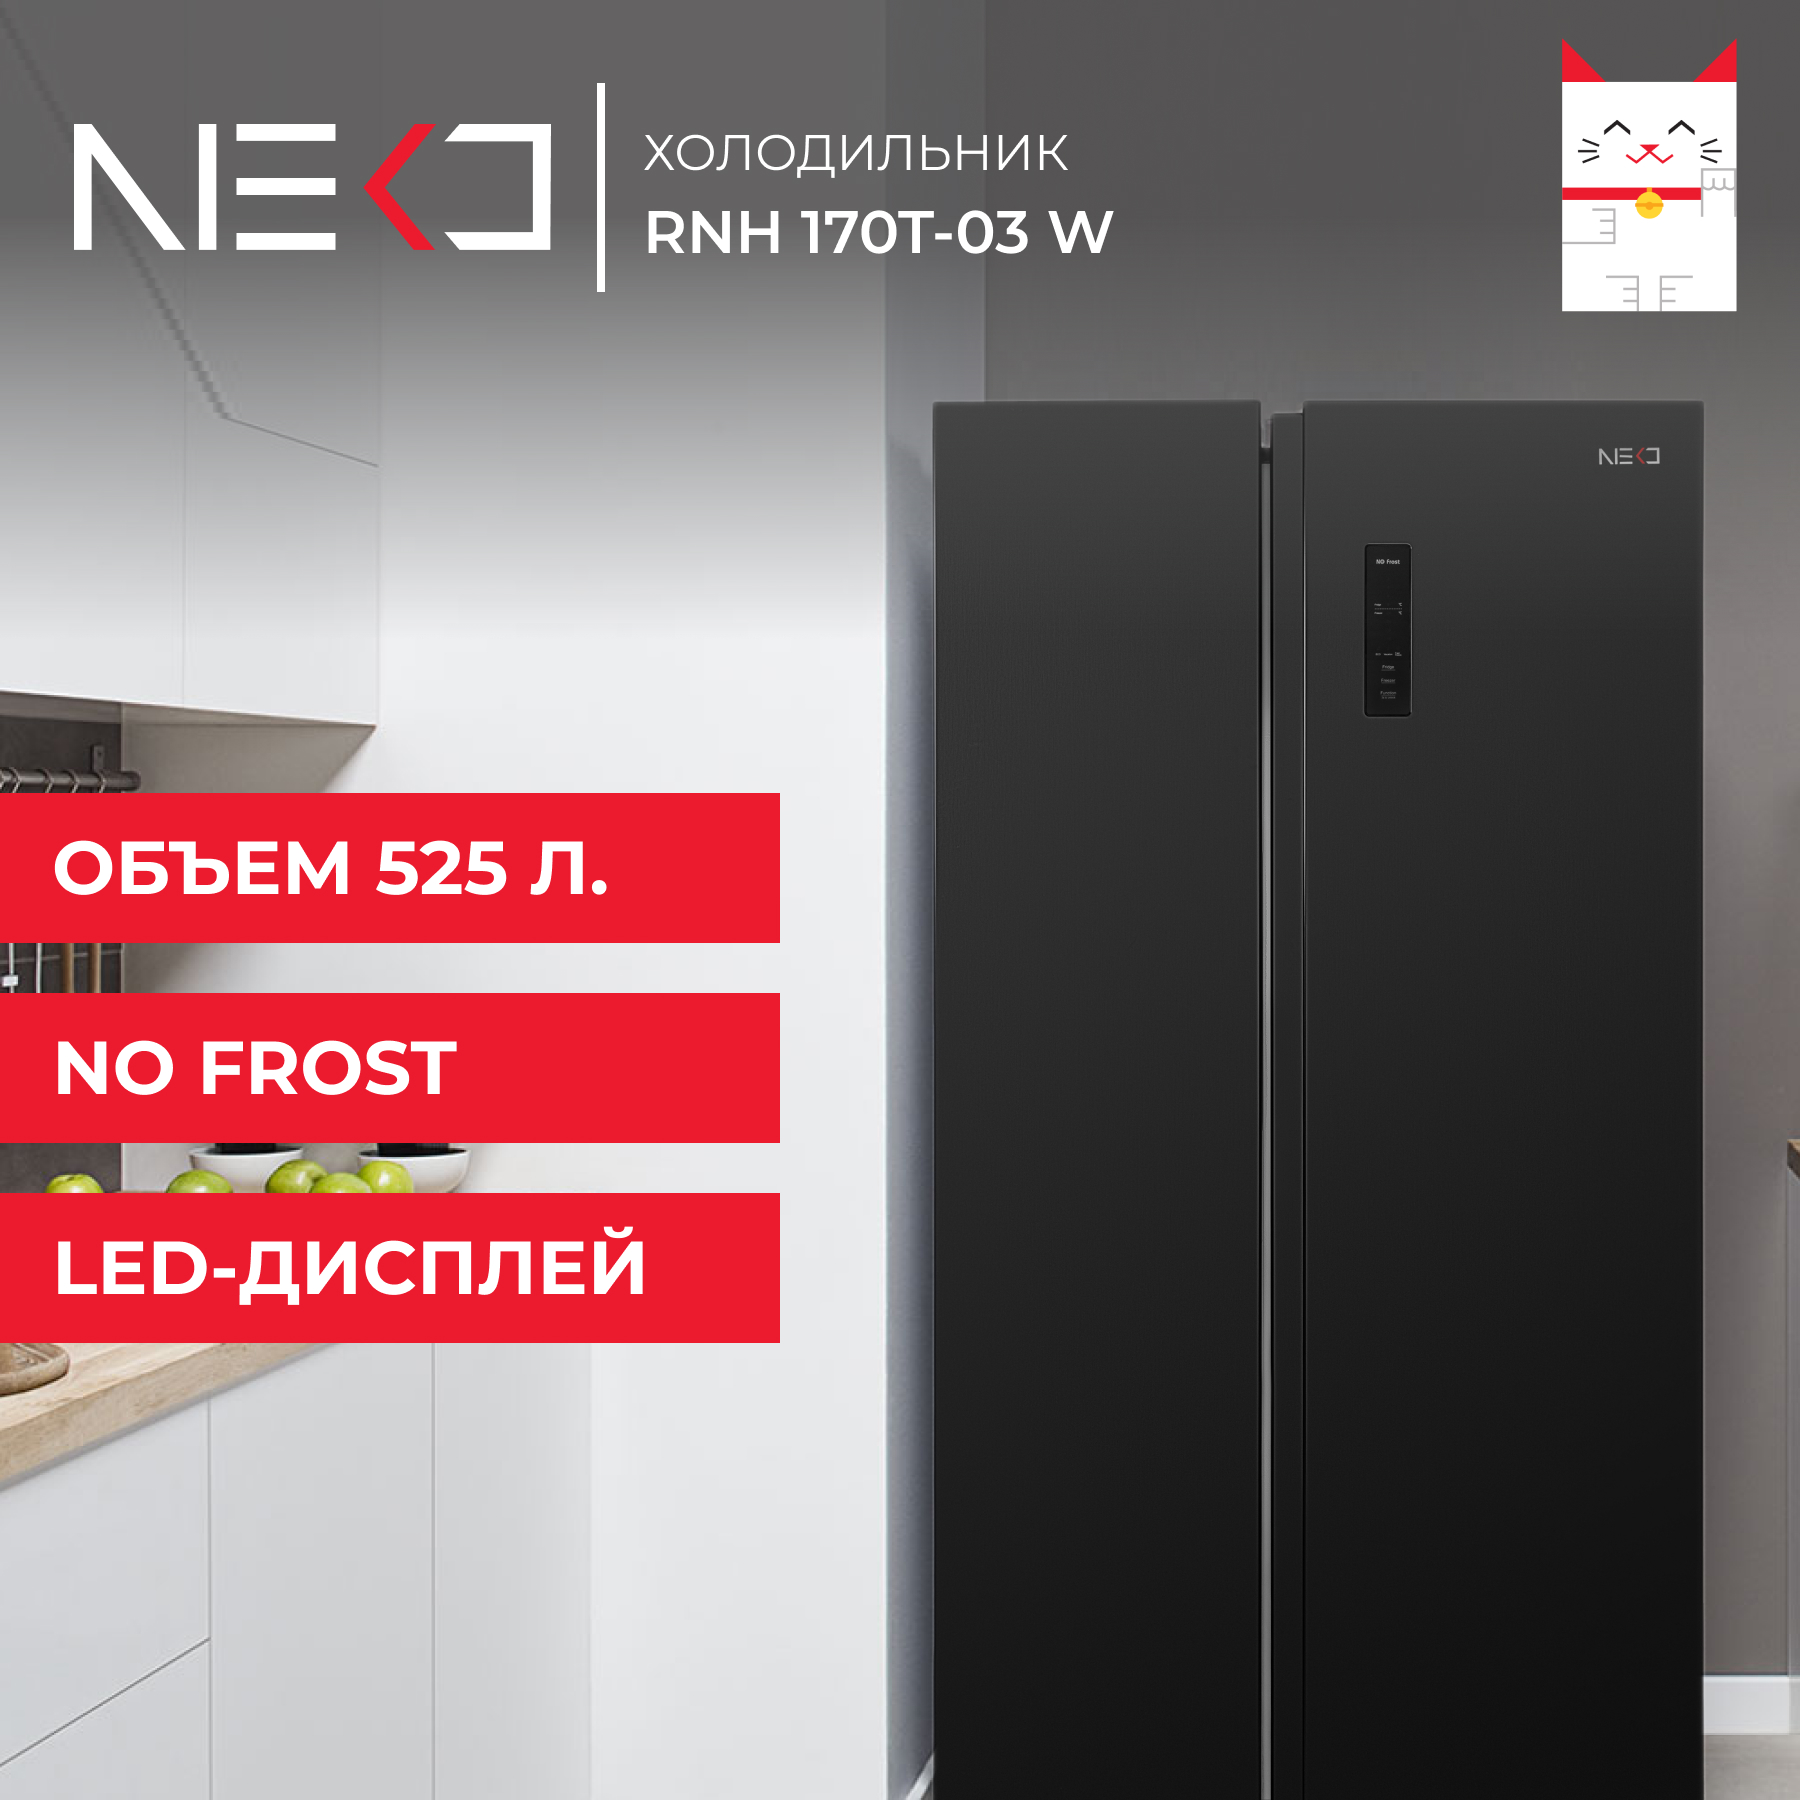 Холодильник Neko RNH 170T-03 W черный холодильник side by side kaiser ks 80420 r